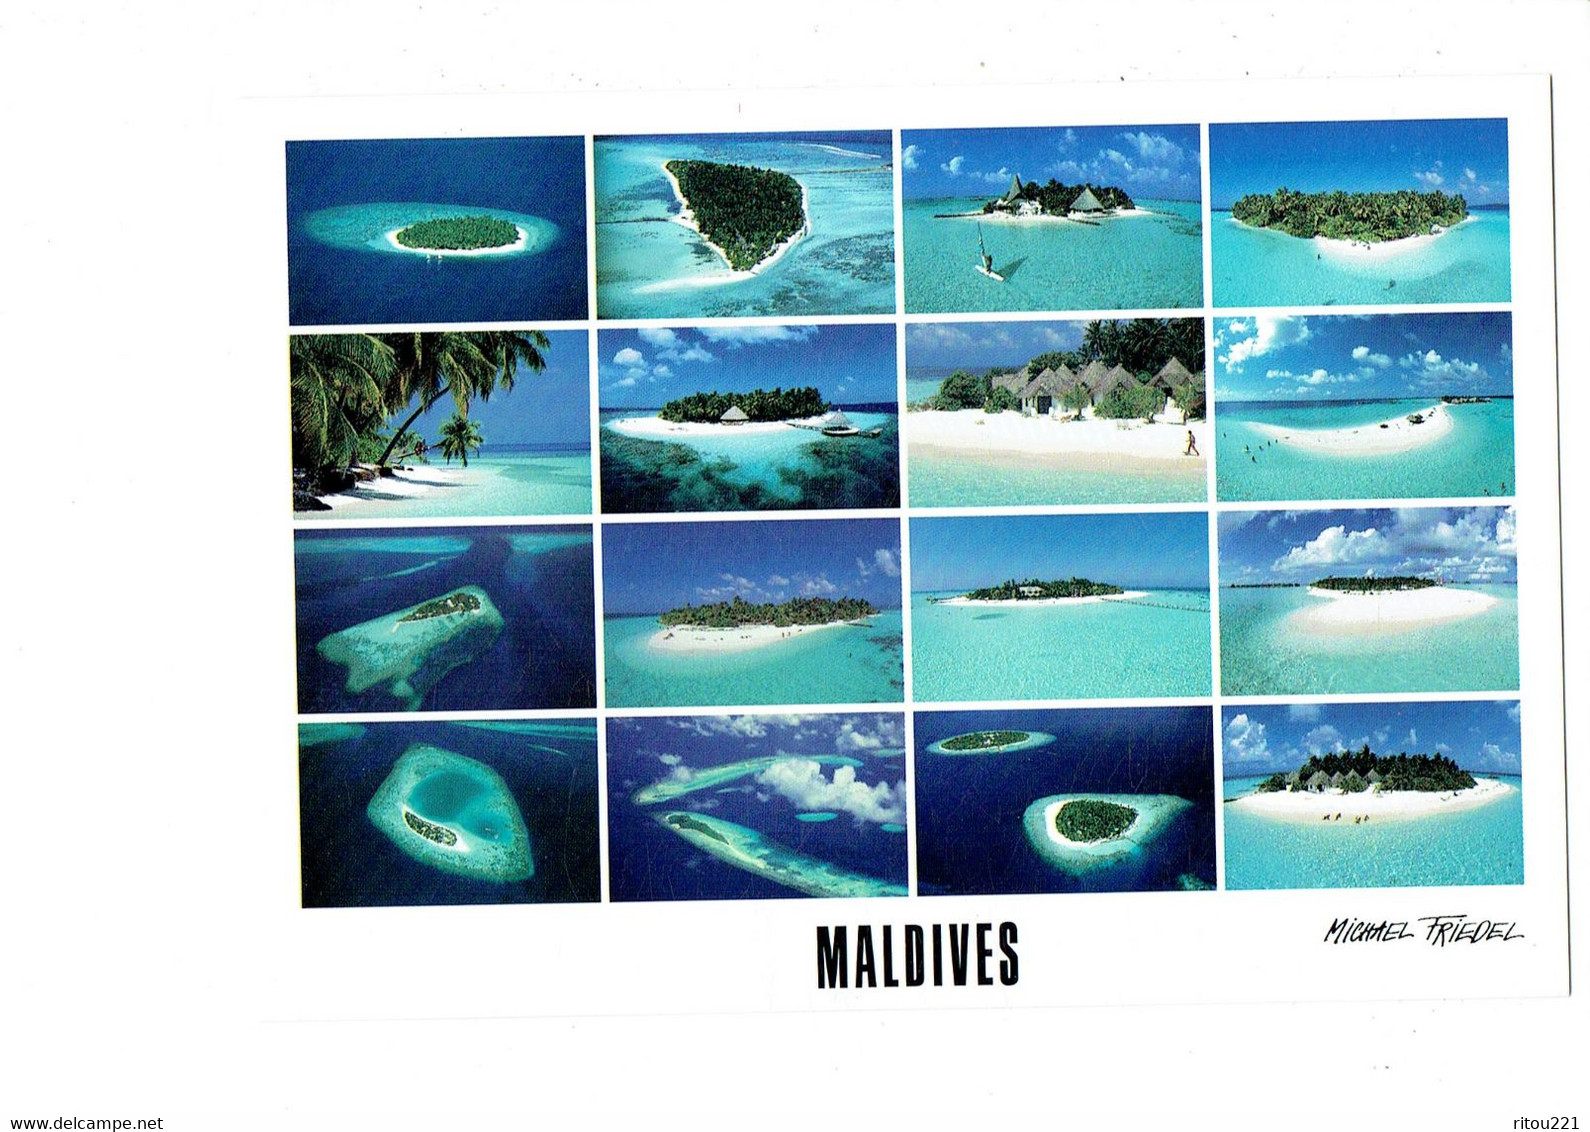 Cpm - MALDIVES - HOTEL ISLANDS - Photo Michael Friedel - Club Med. IHURU BANDOS Plage - Maldives